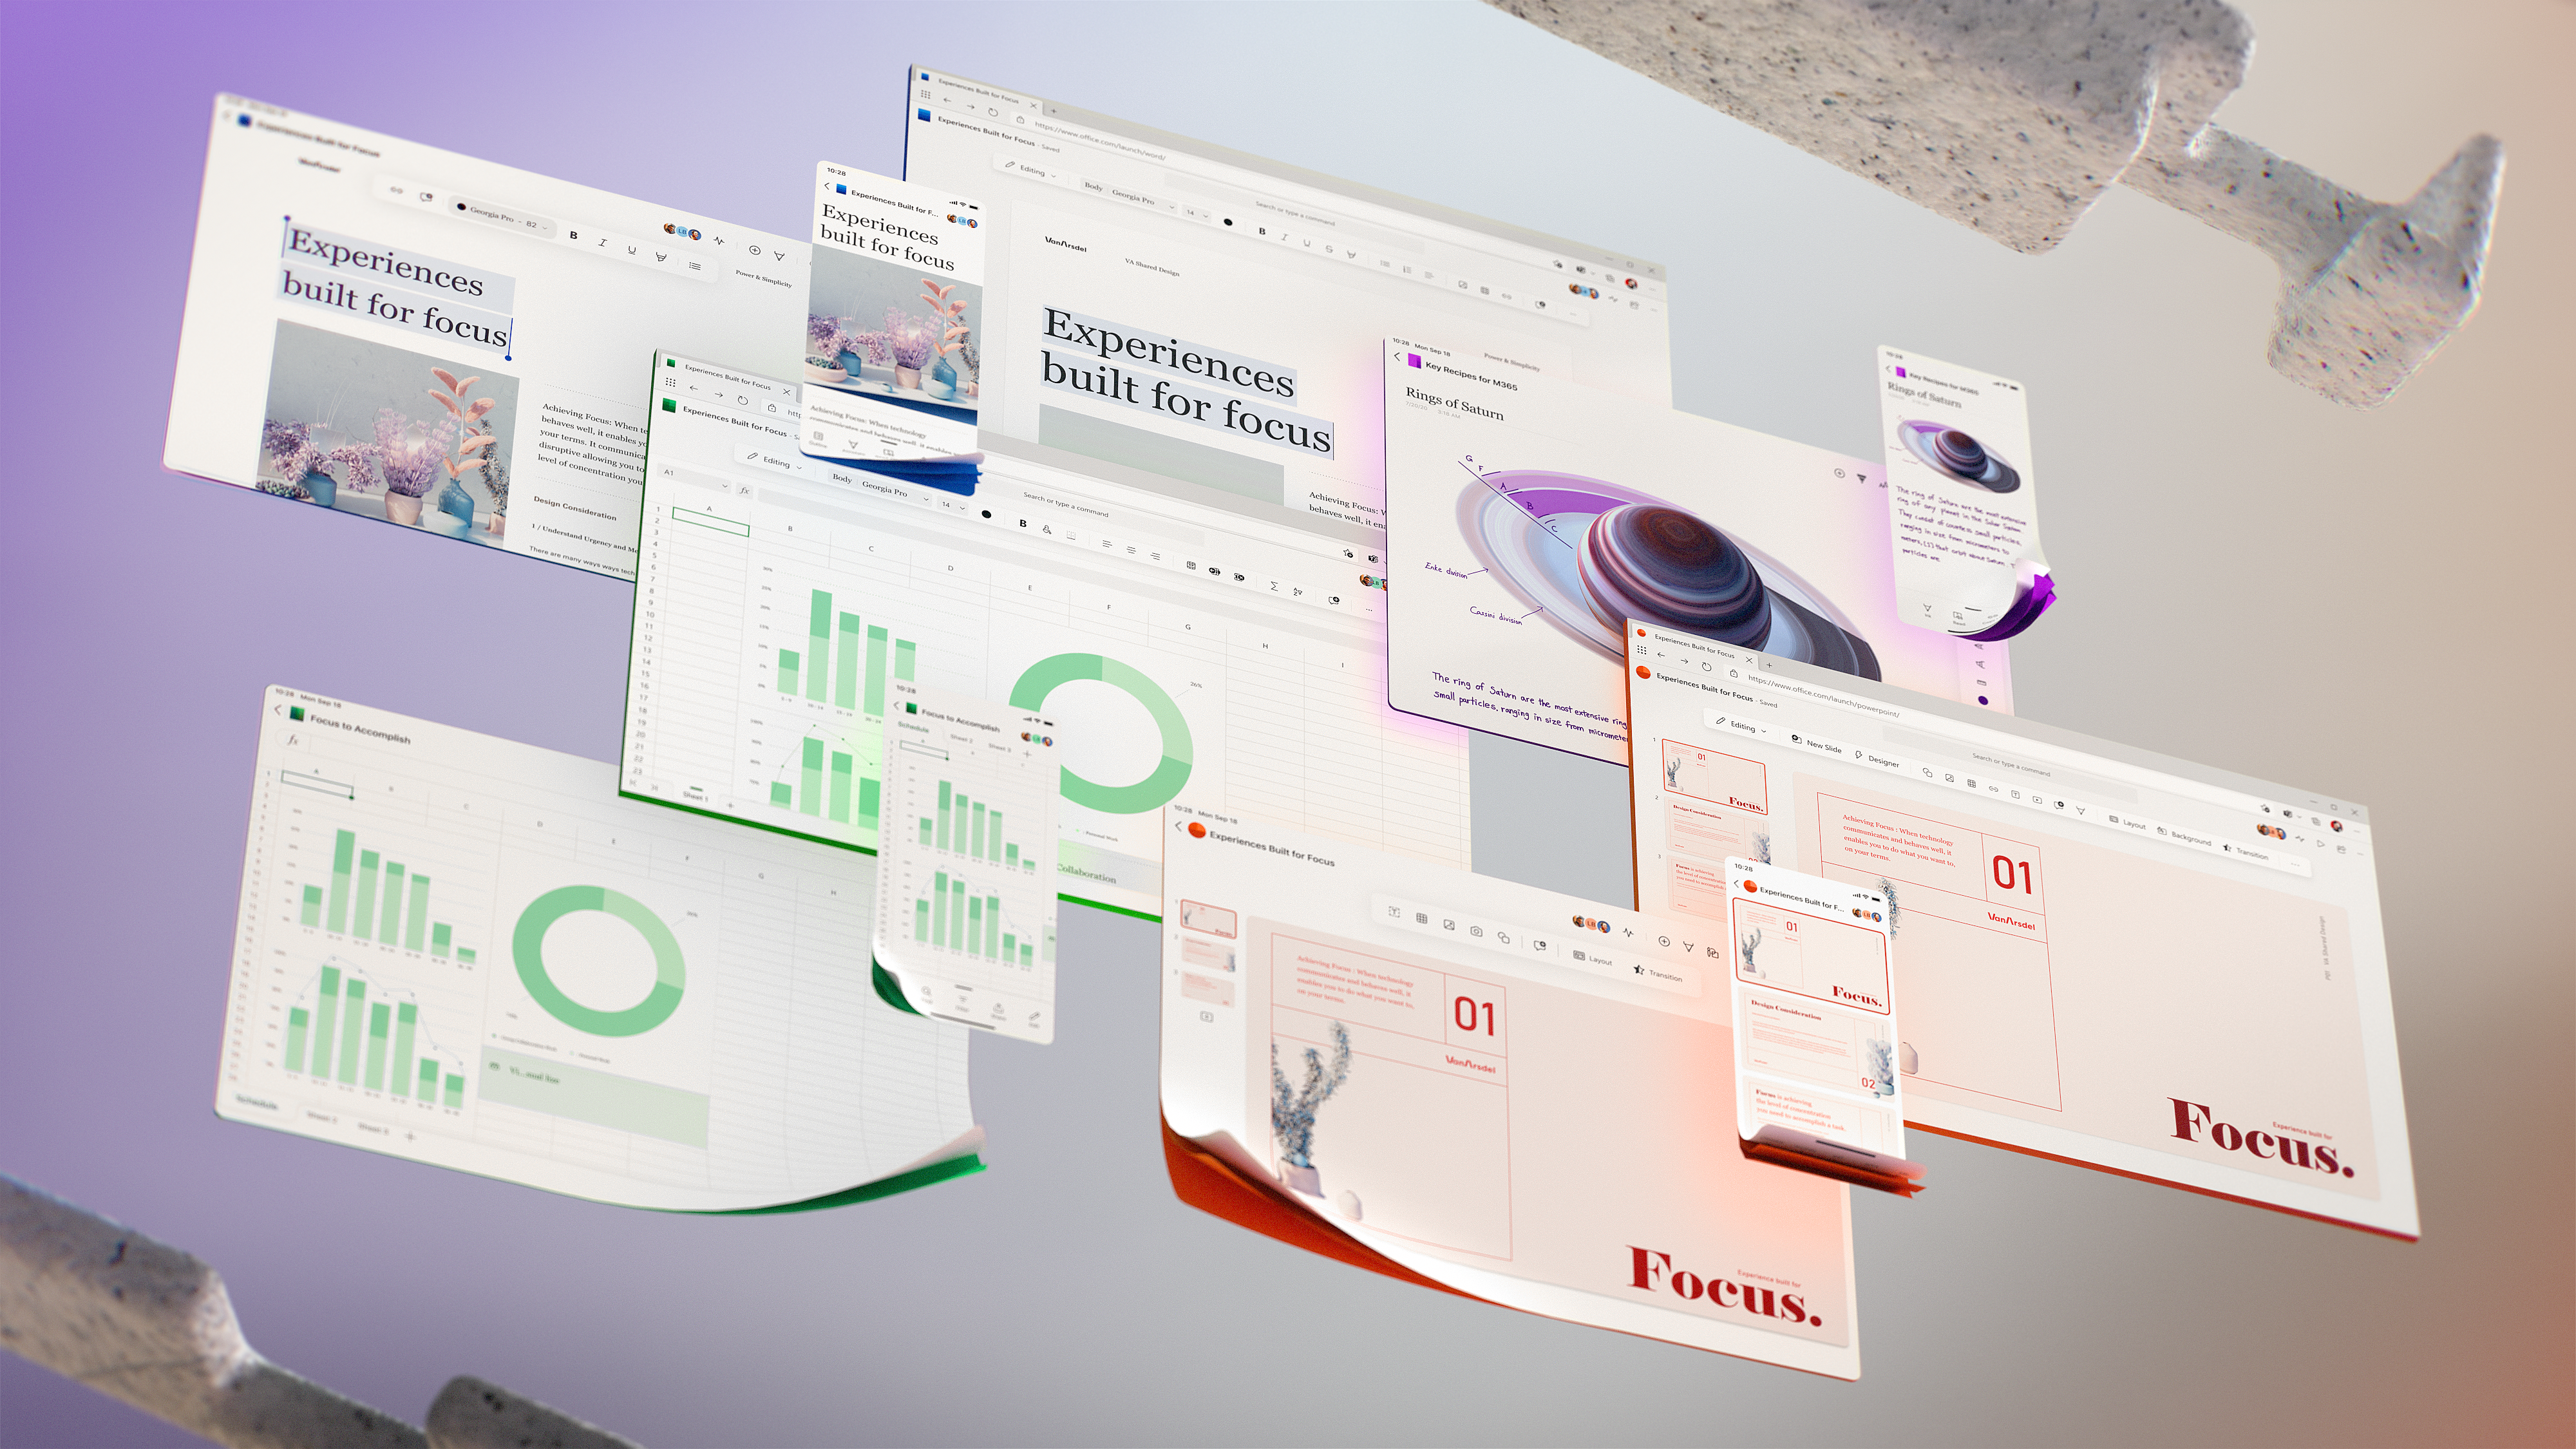 Microsoft Office 2020 - The future UI